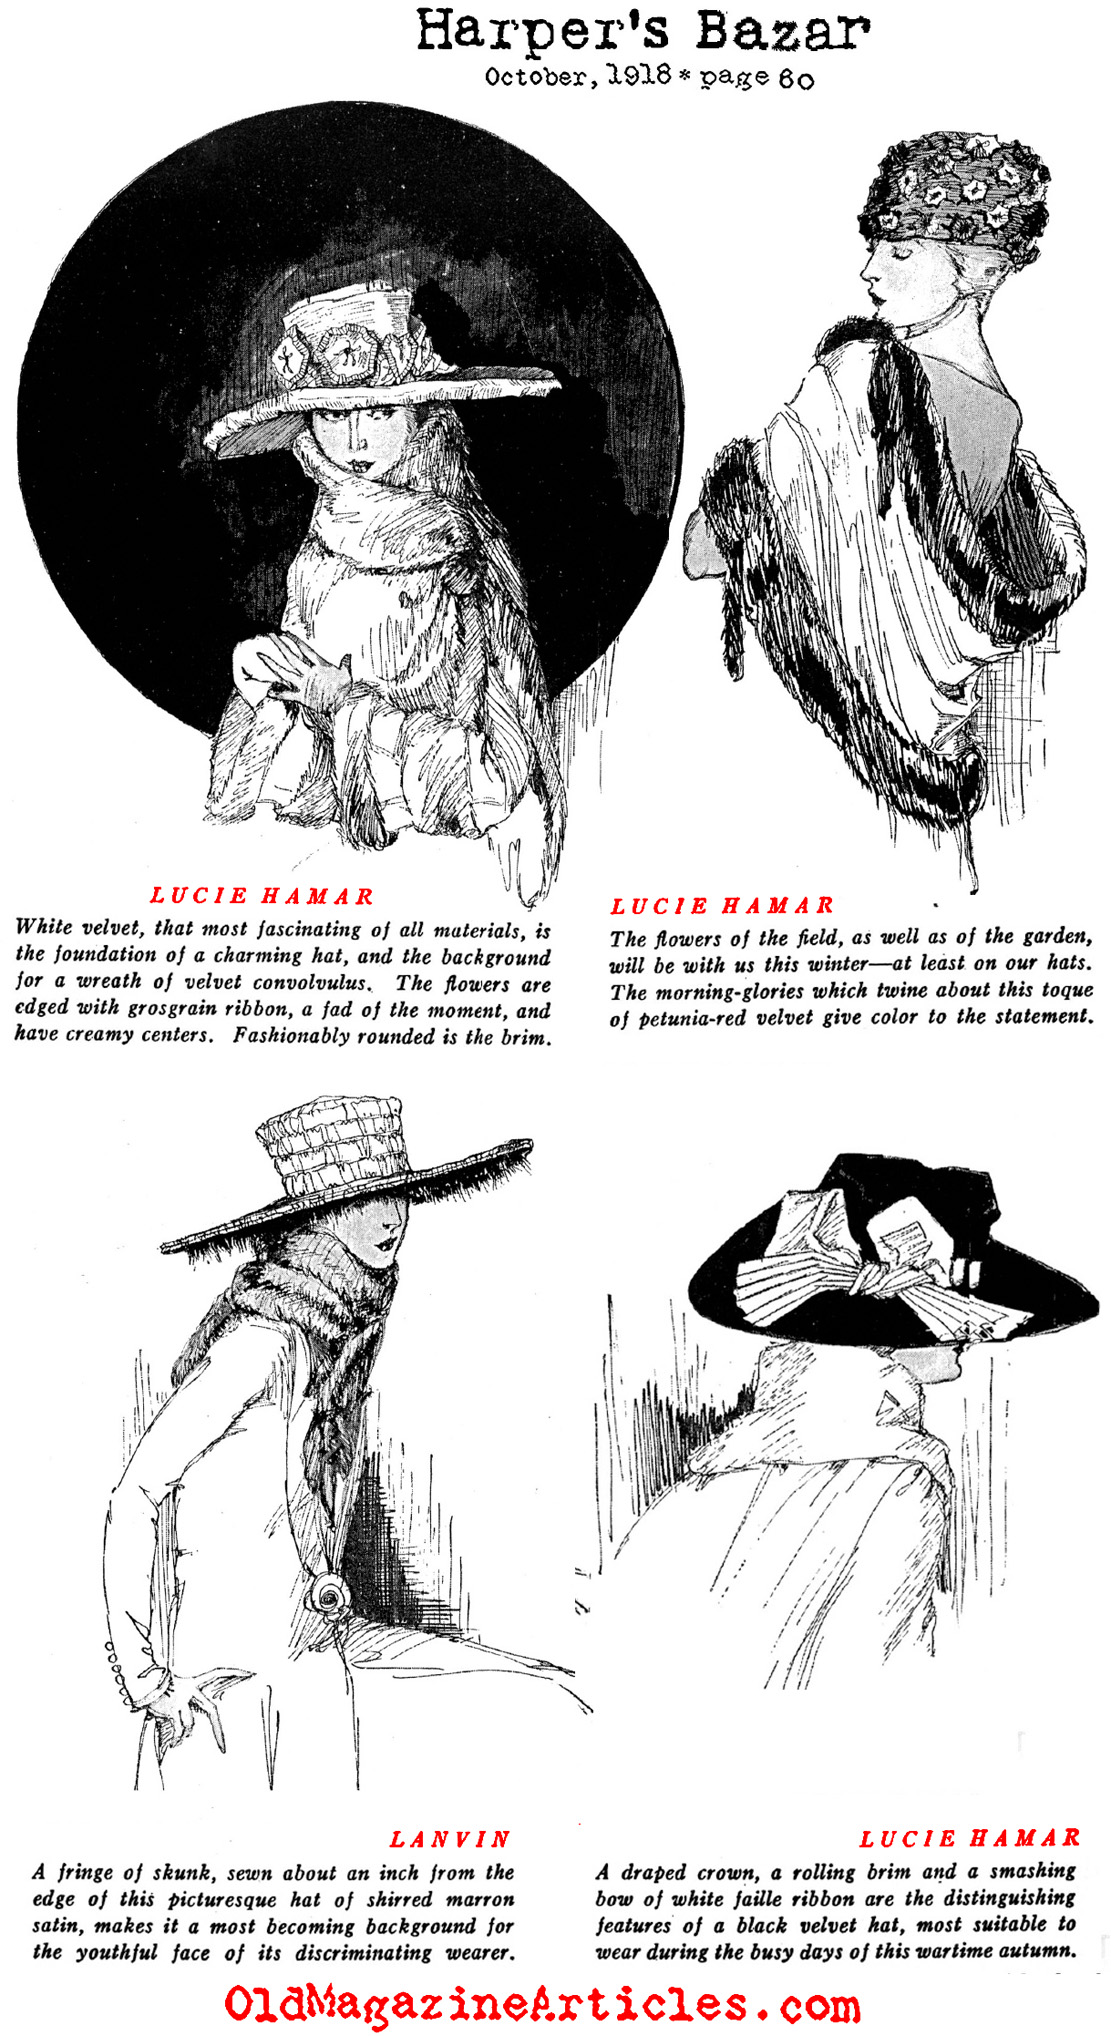 Feminine Hats from a War-Weary France (Harper's Bazaar, 1918)